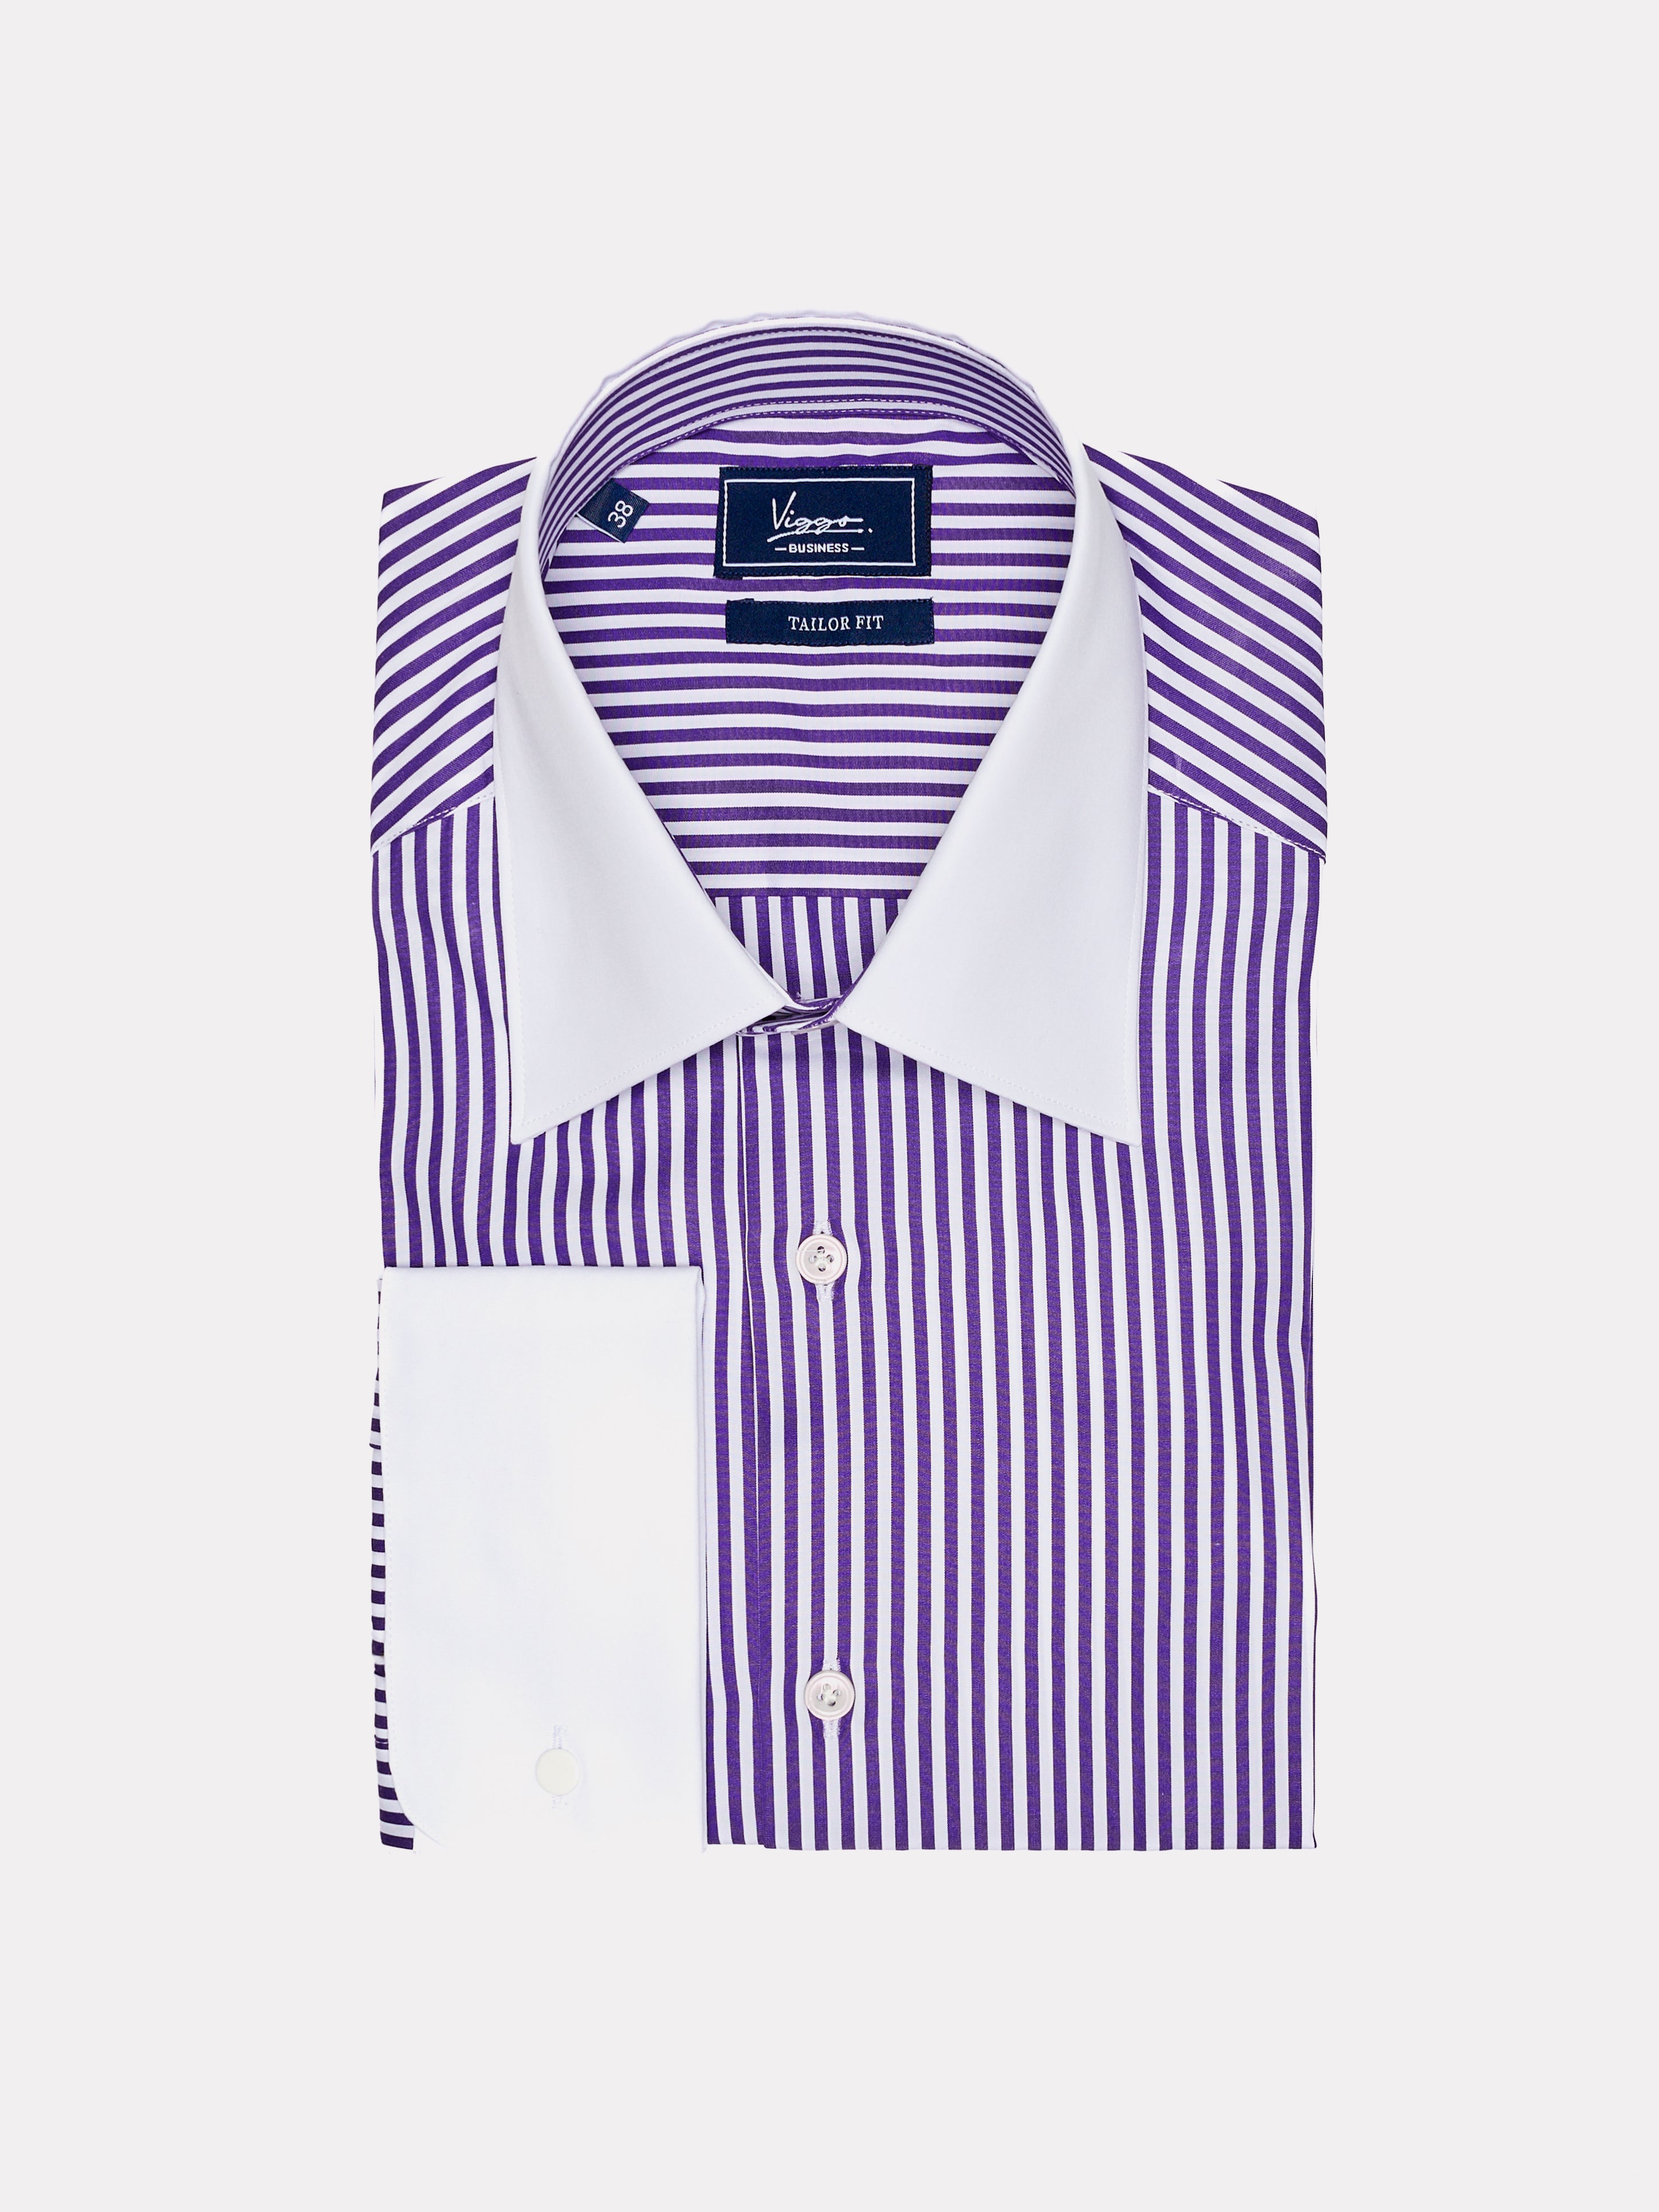 紫のストライプの白いシャツ、ボタンカフス